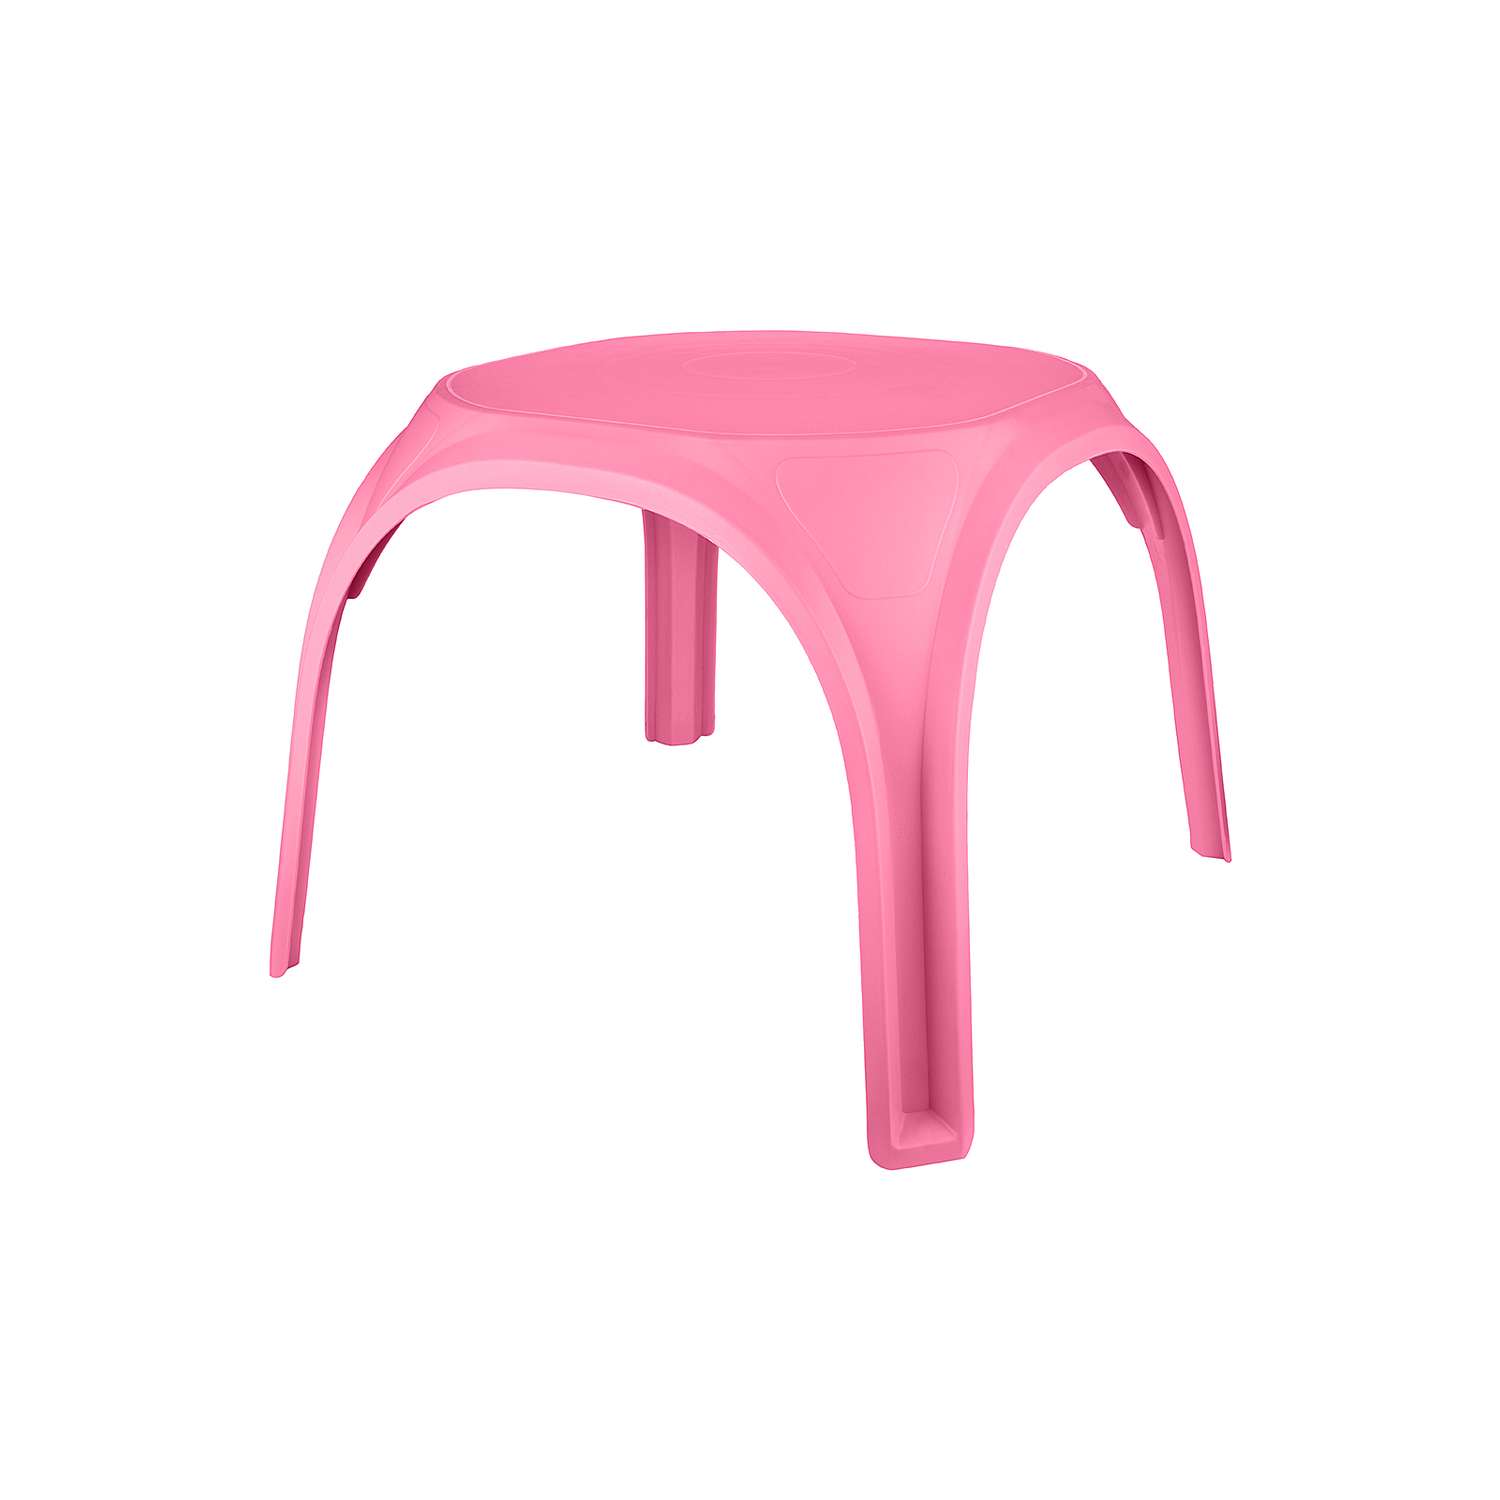 Стол десткий KETT-UP ОСЬМИНОЖКА пластиковый розовый - фото 1